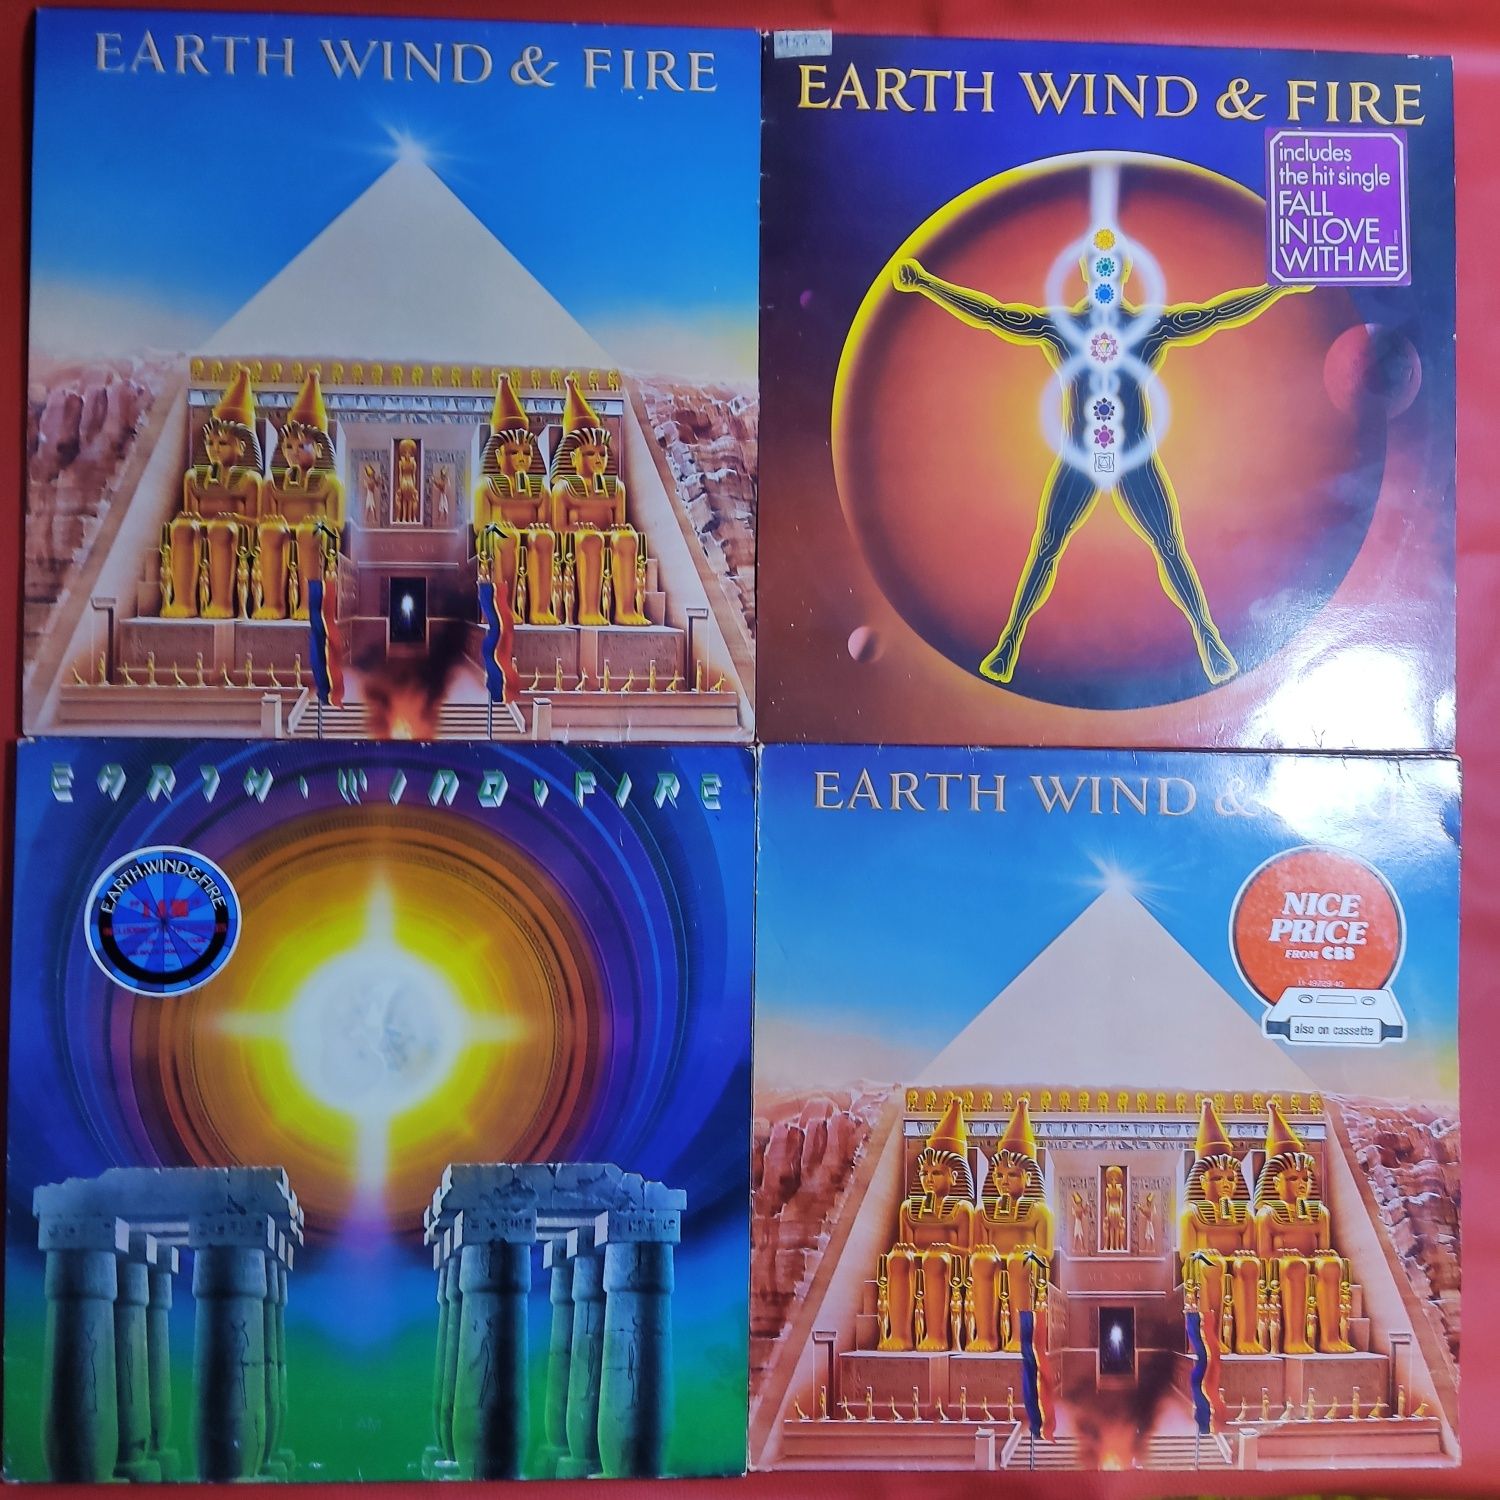 Earth, Wind & Fire - Фірмові вінілові платівки.1979/83/86.